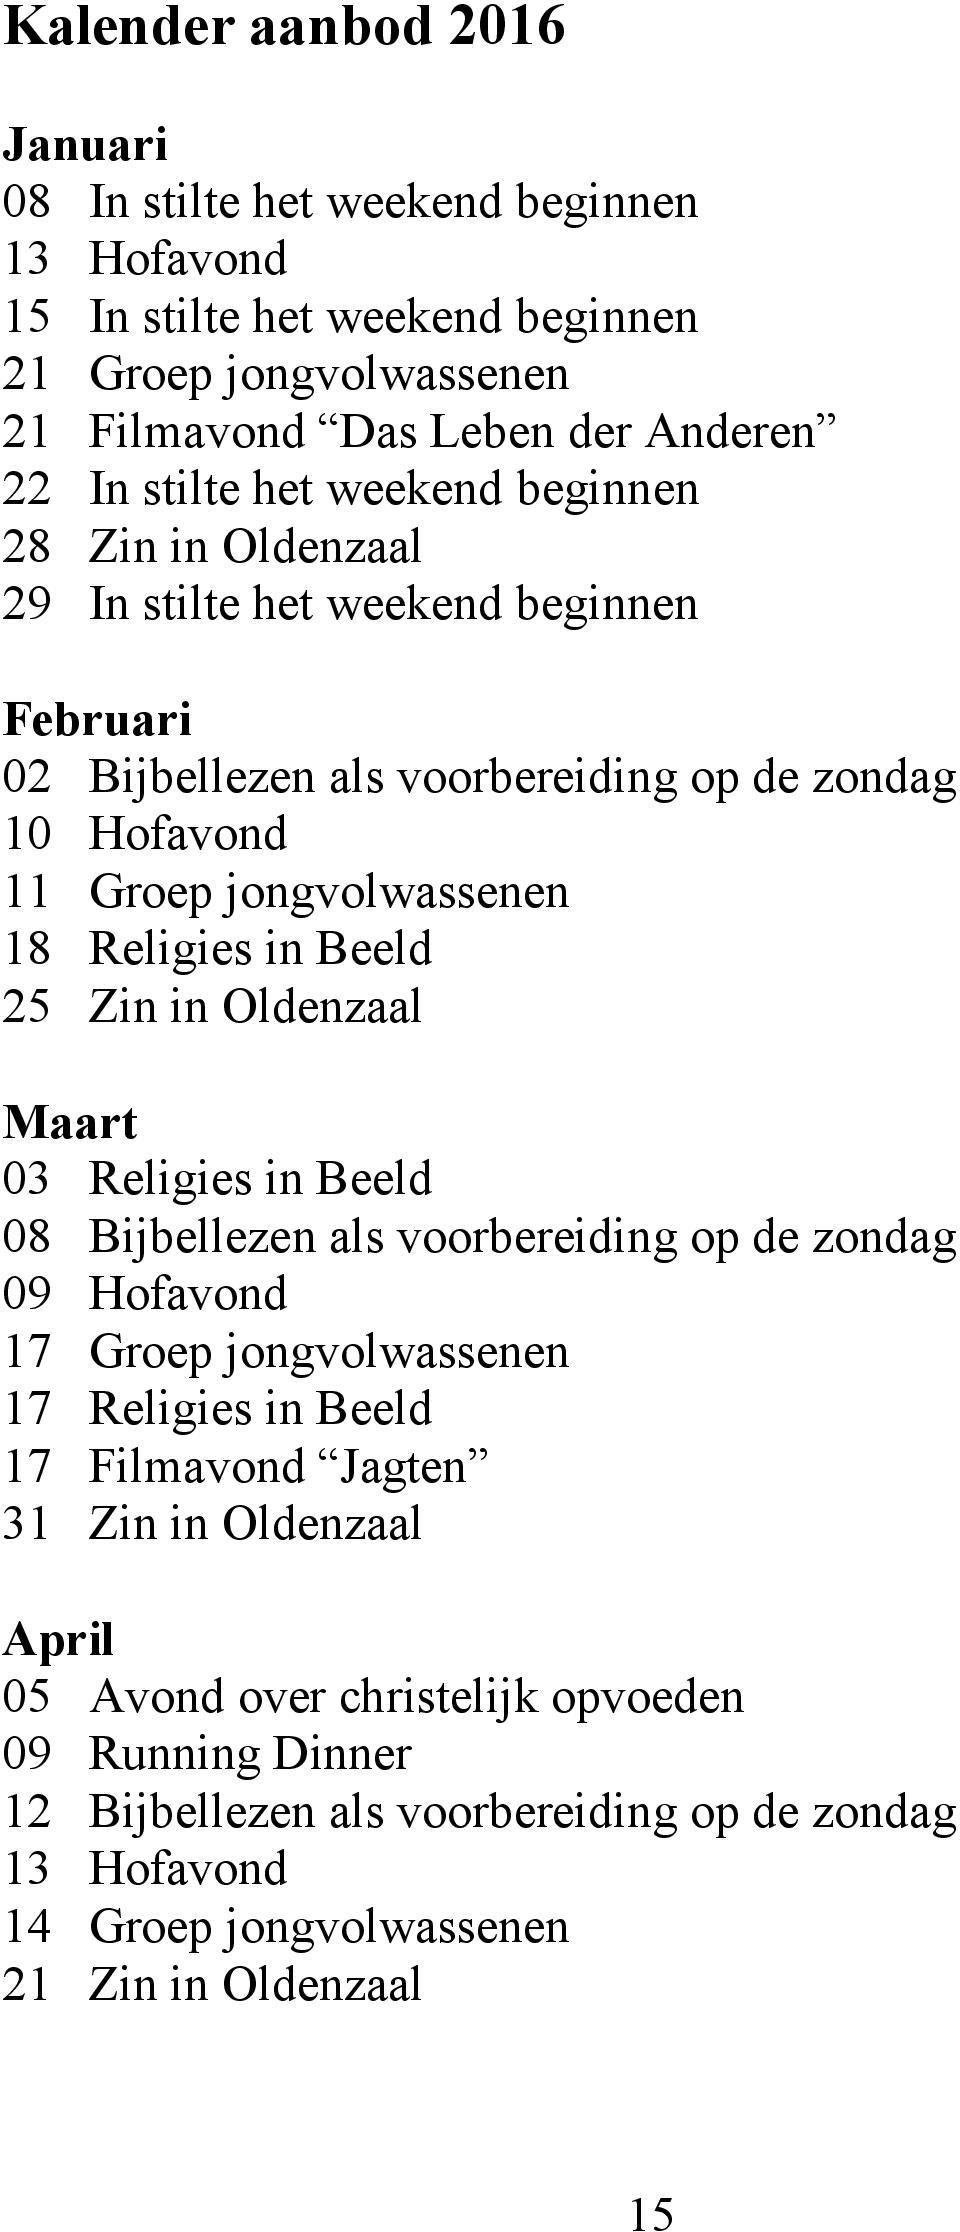 Beeld 25 Zin in Oldenzaal Maart 03 Religies in Beeld 08 Bijbellezen als voorbereiding op de zondag 09 Hofavond 17 Groep jongvolwassenen 17 Religies in Beeld 17 Filmavond Jagten 31